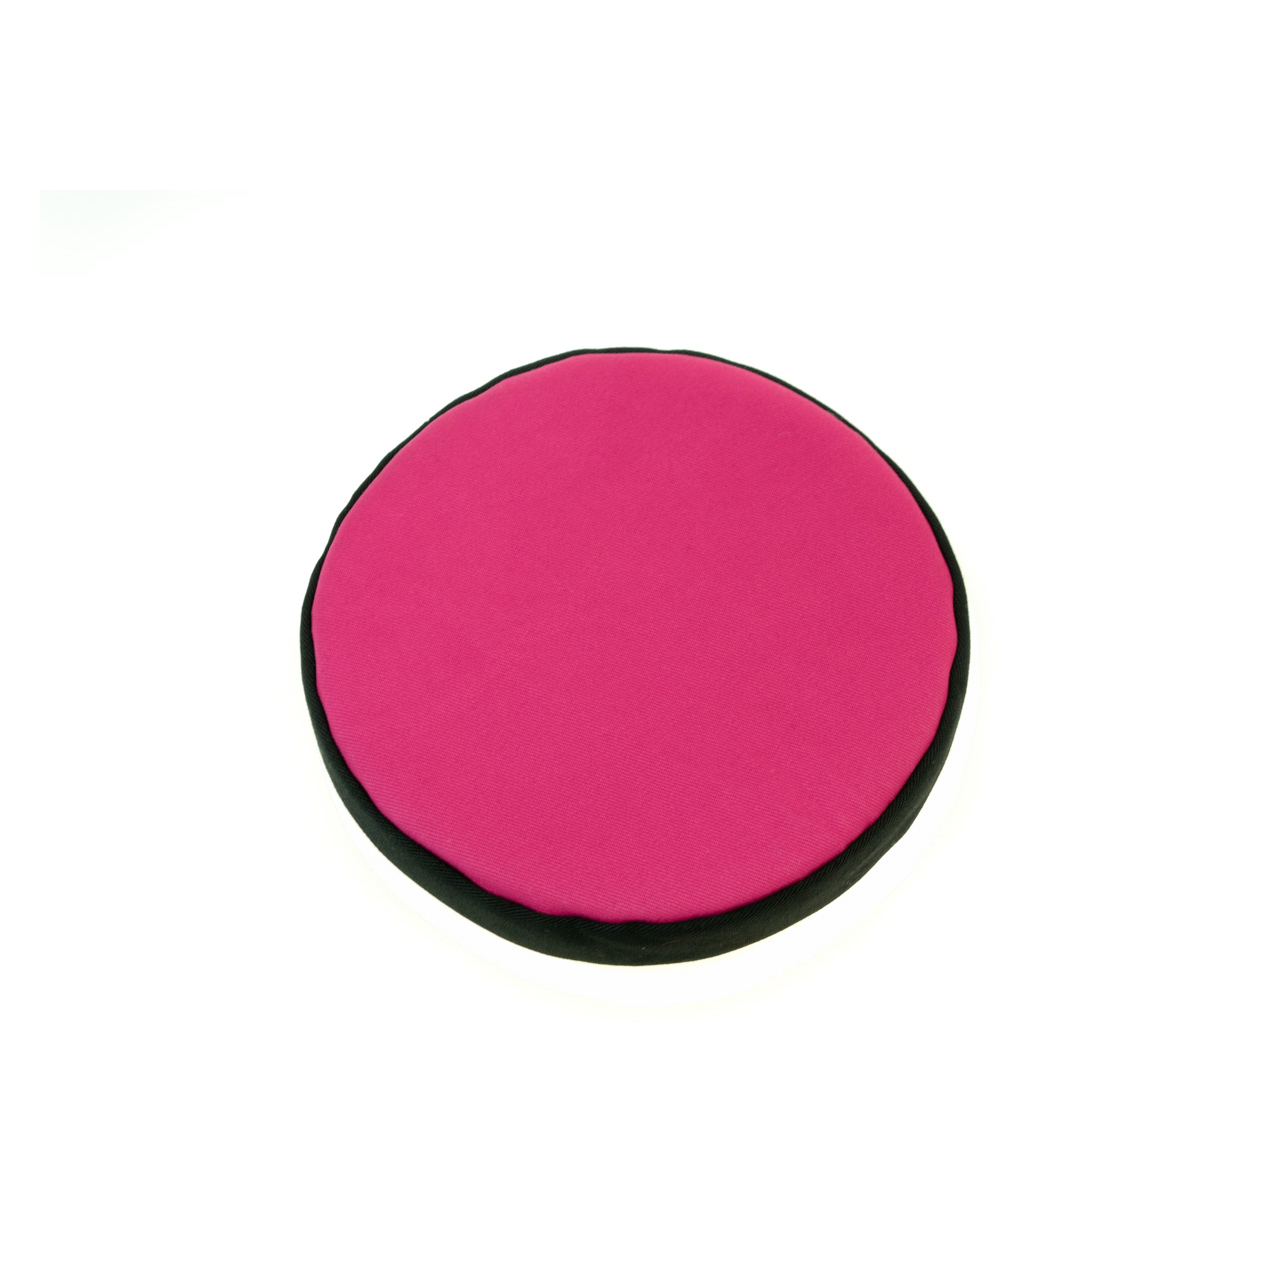 Rundes Kissen für Klangschale pink mit schwarzer Borte Durchmesser 15 cm